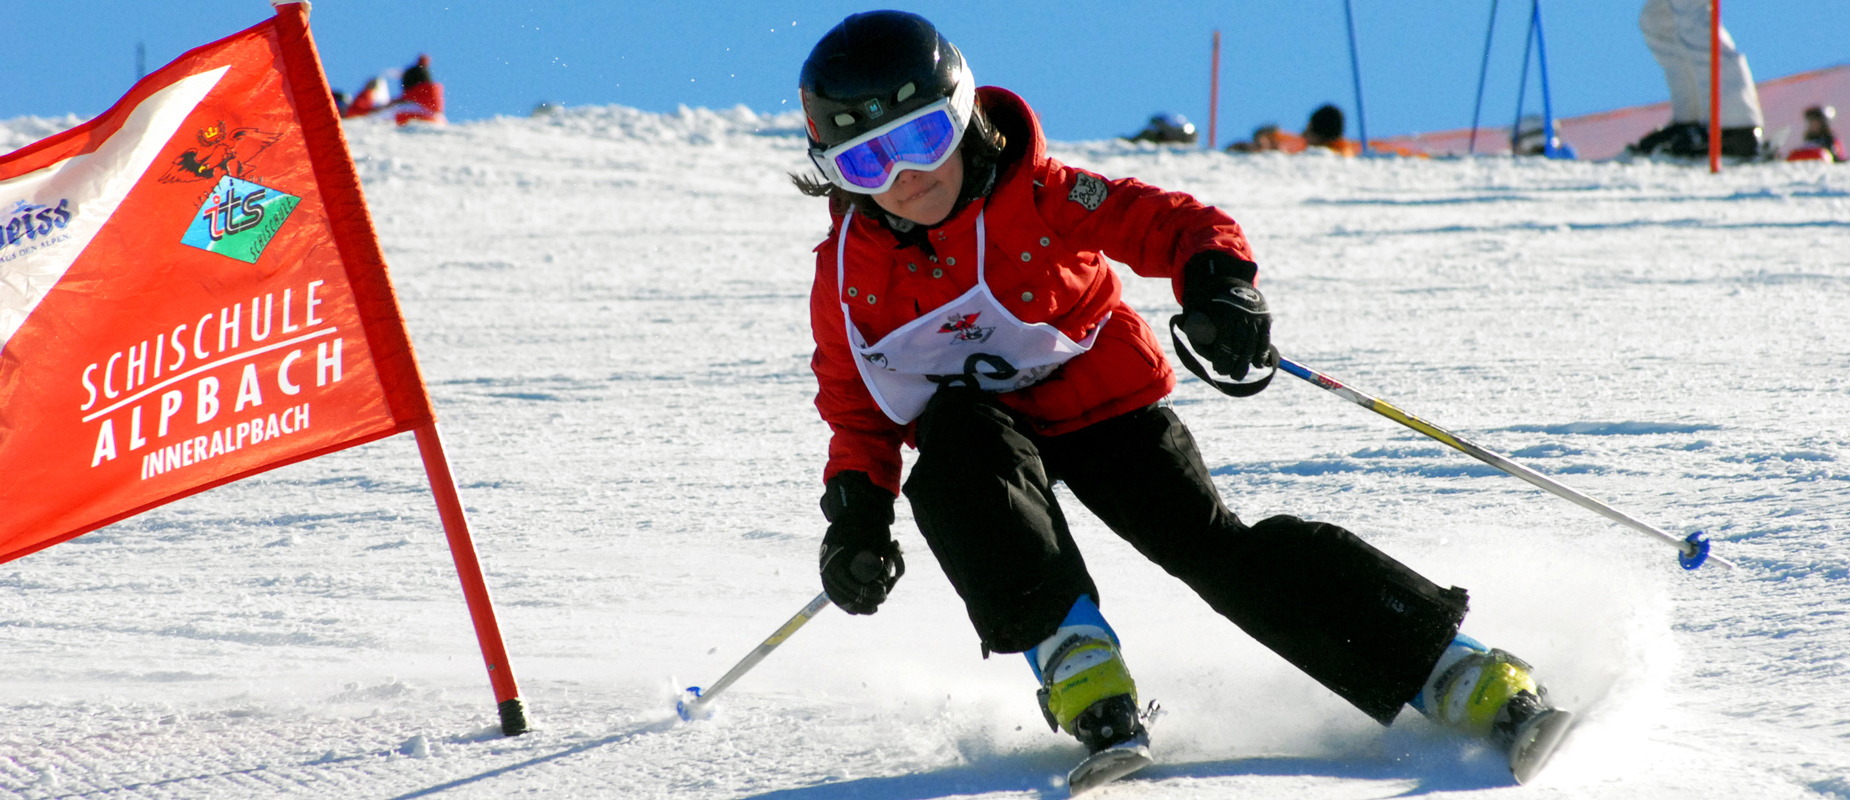 Skischule mit Tradition Ausgebildete SkilehrerInnen und KinderbetreuerInnen